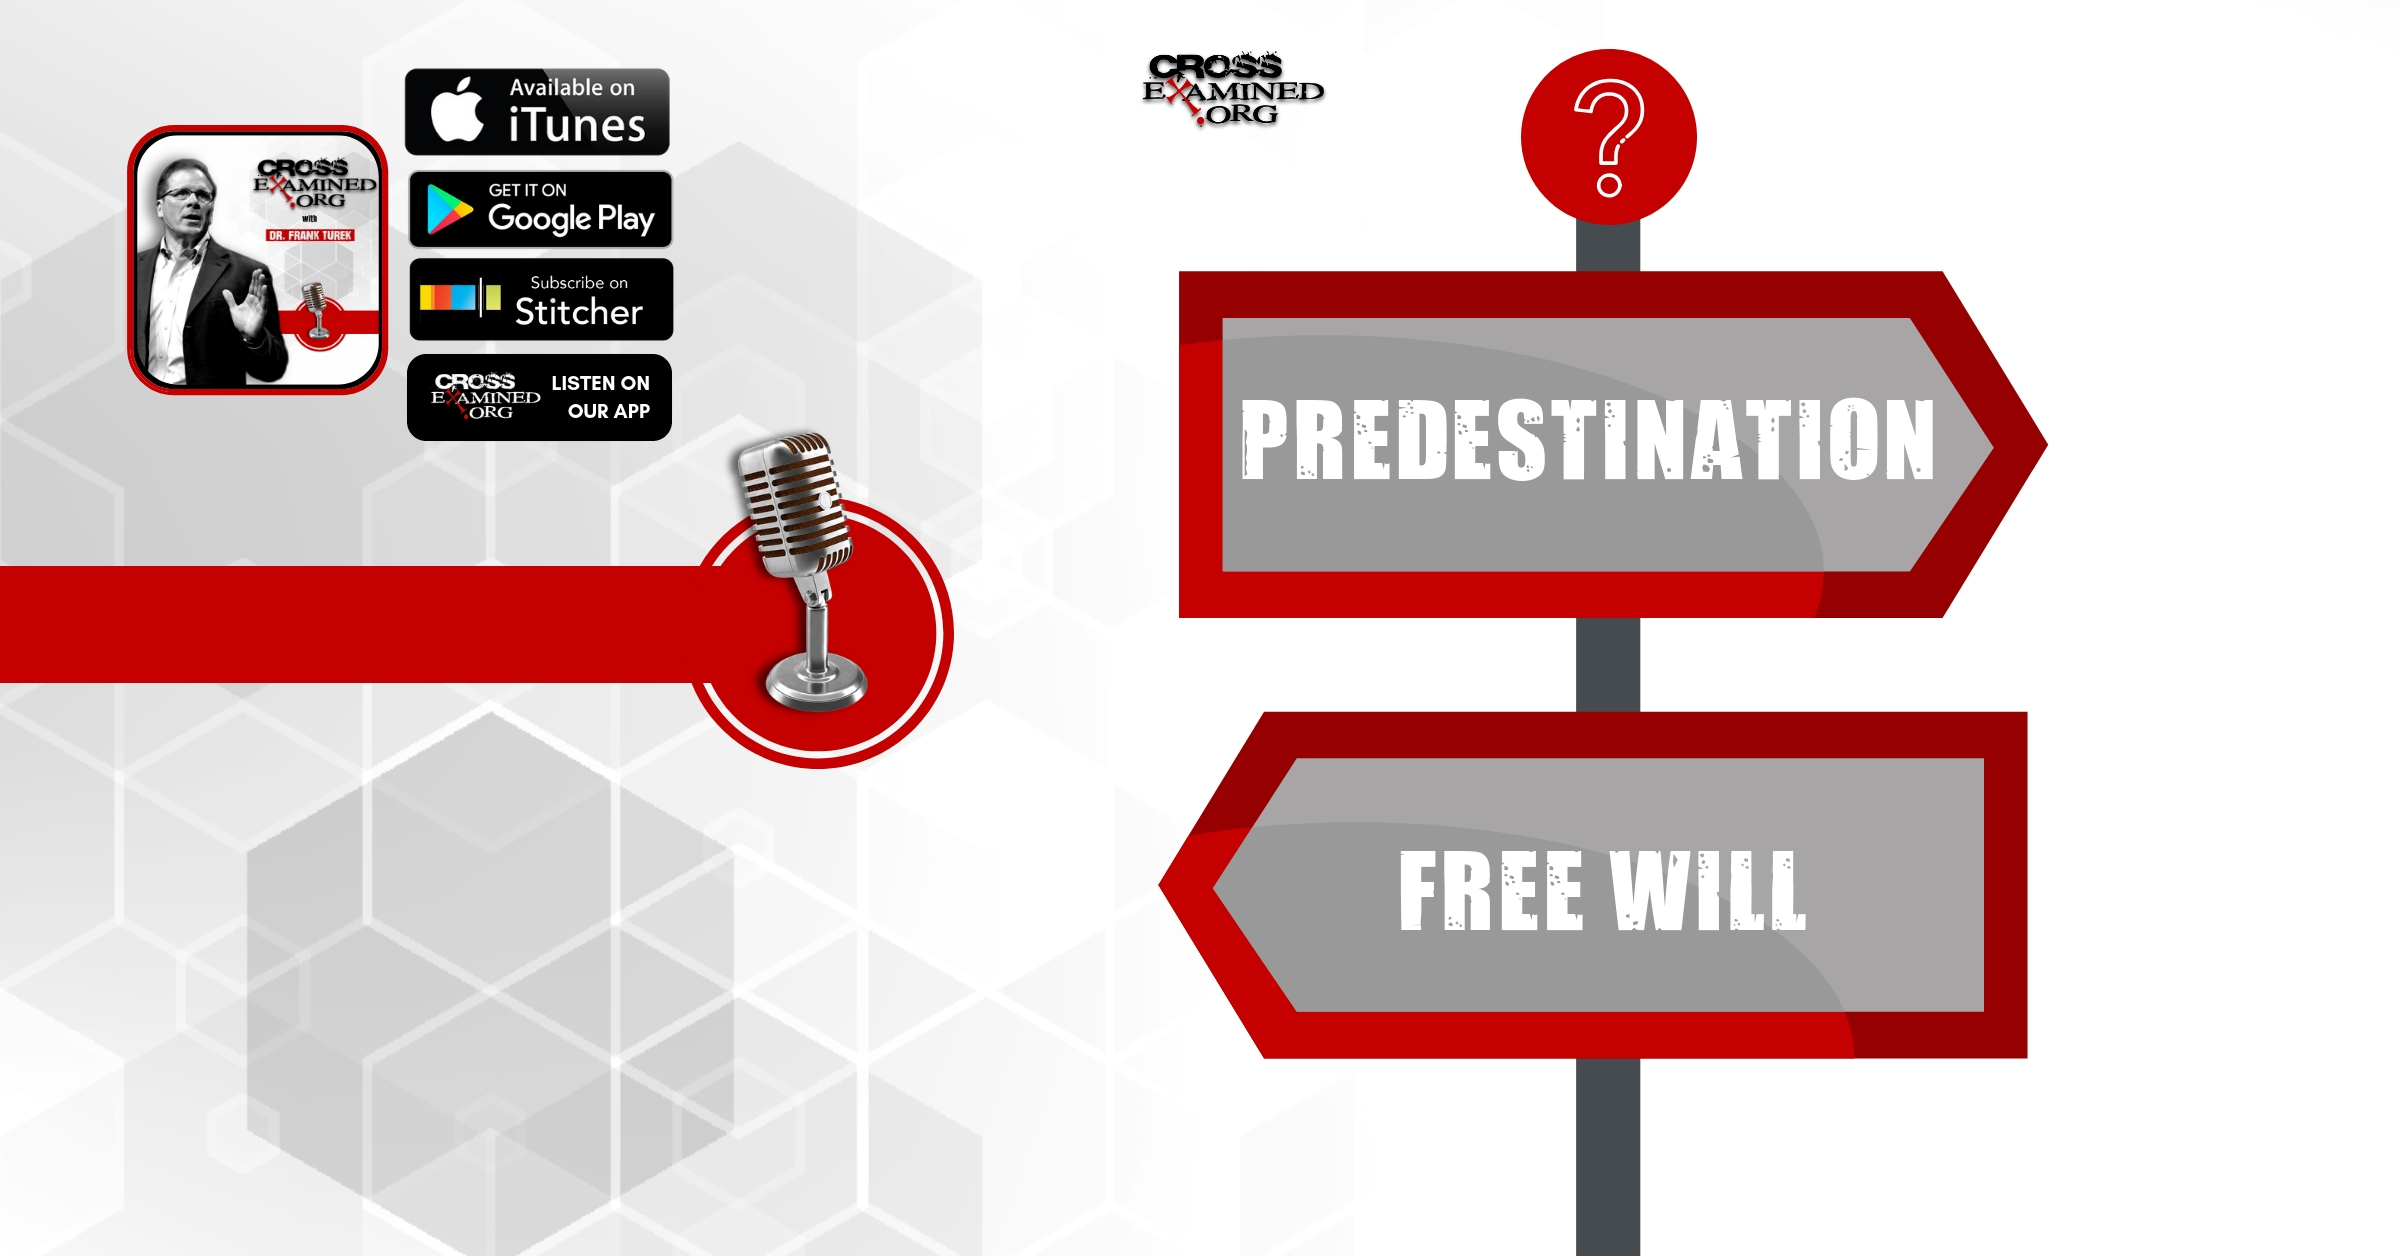 Predestination vs Free Will